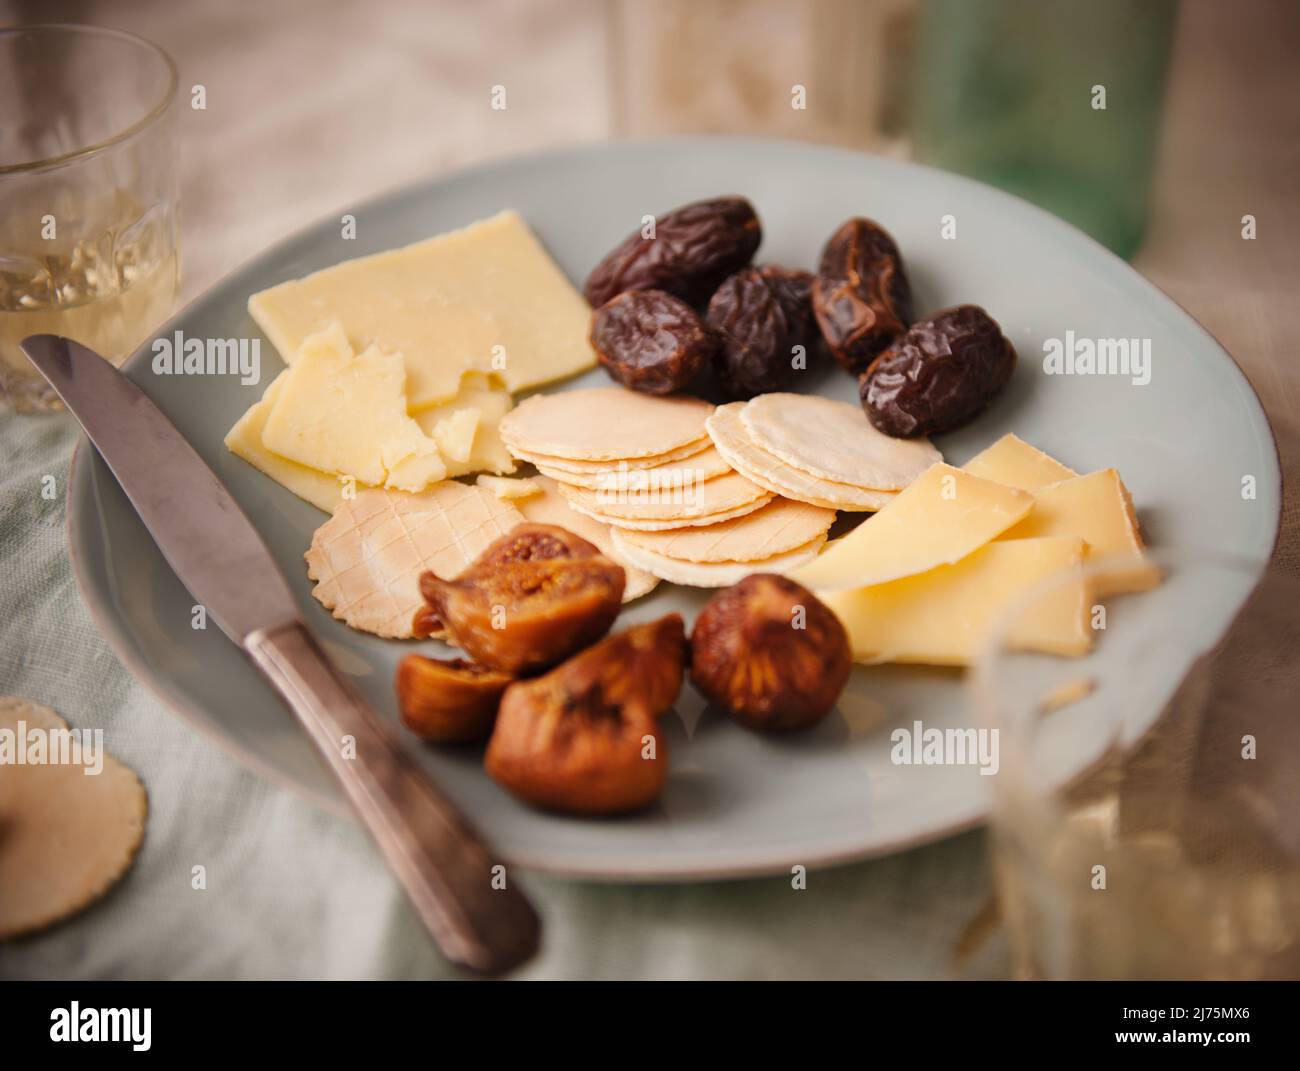 Vorspeise mit Käse, Crackern, Feigen und Datteln Stockfoto